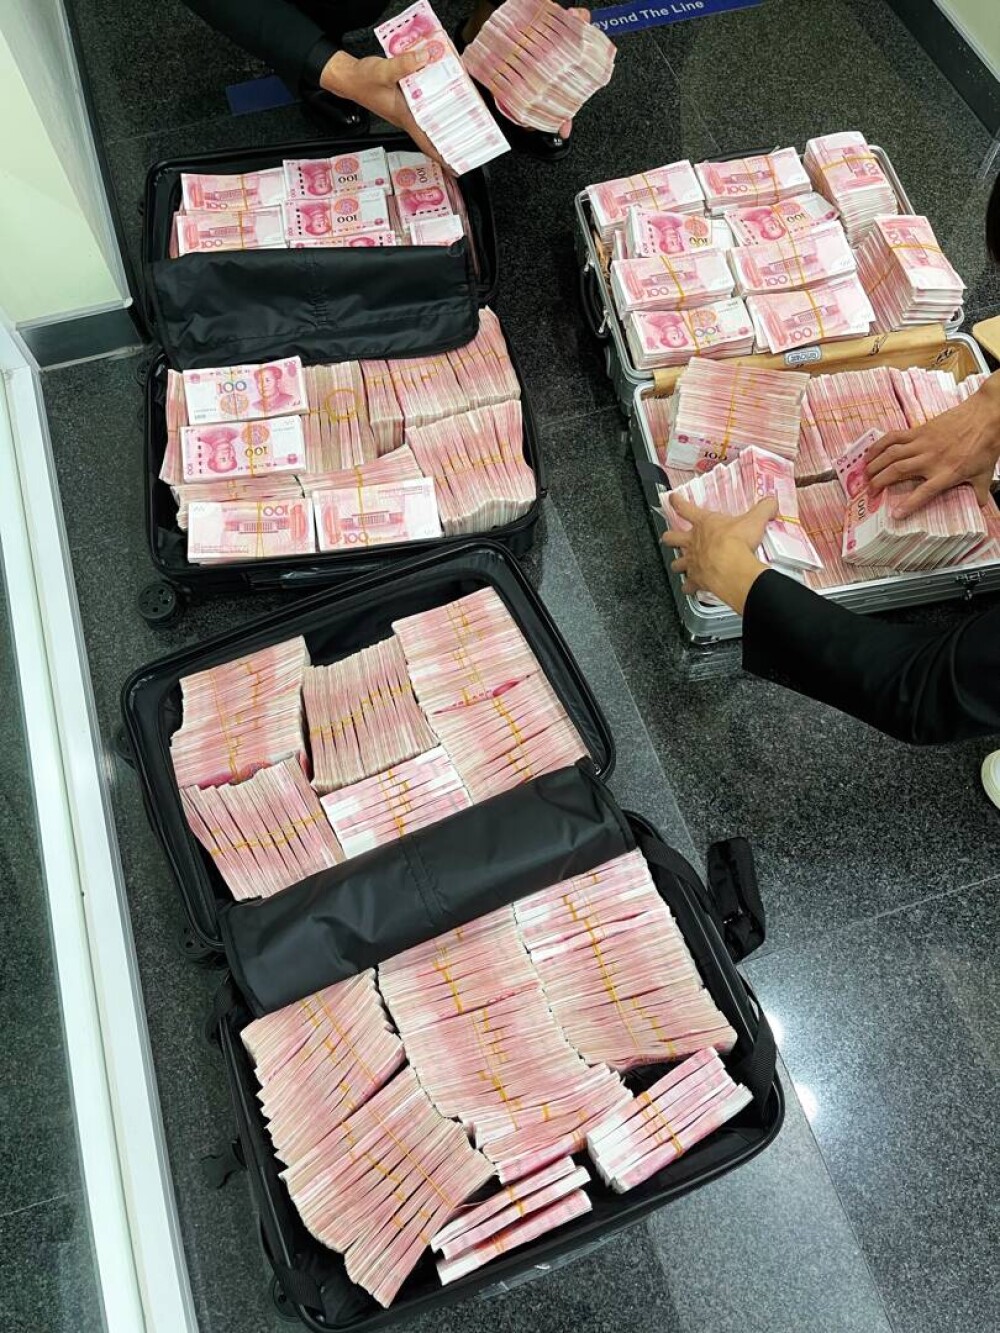 FOTO. Un milionar chinez și-a retras economiile de la bancă după ce s-a certat cu angajații pentru că nu avea mască - Imaginea 4